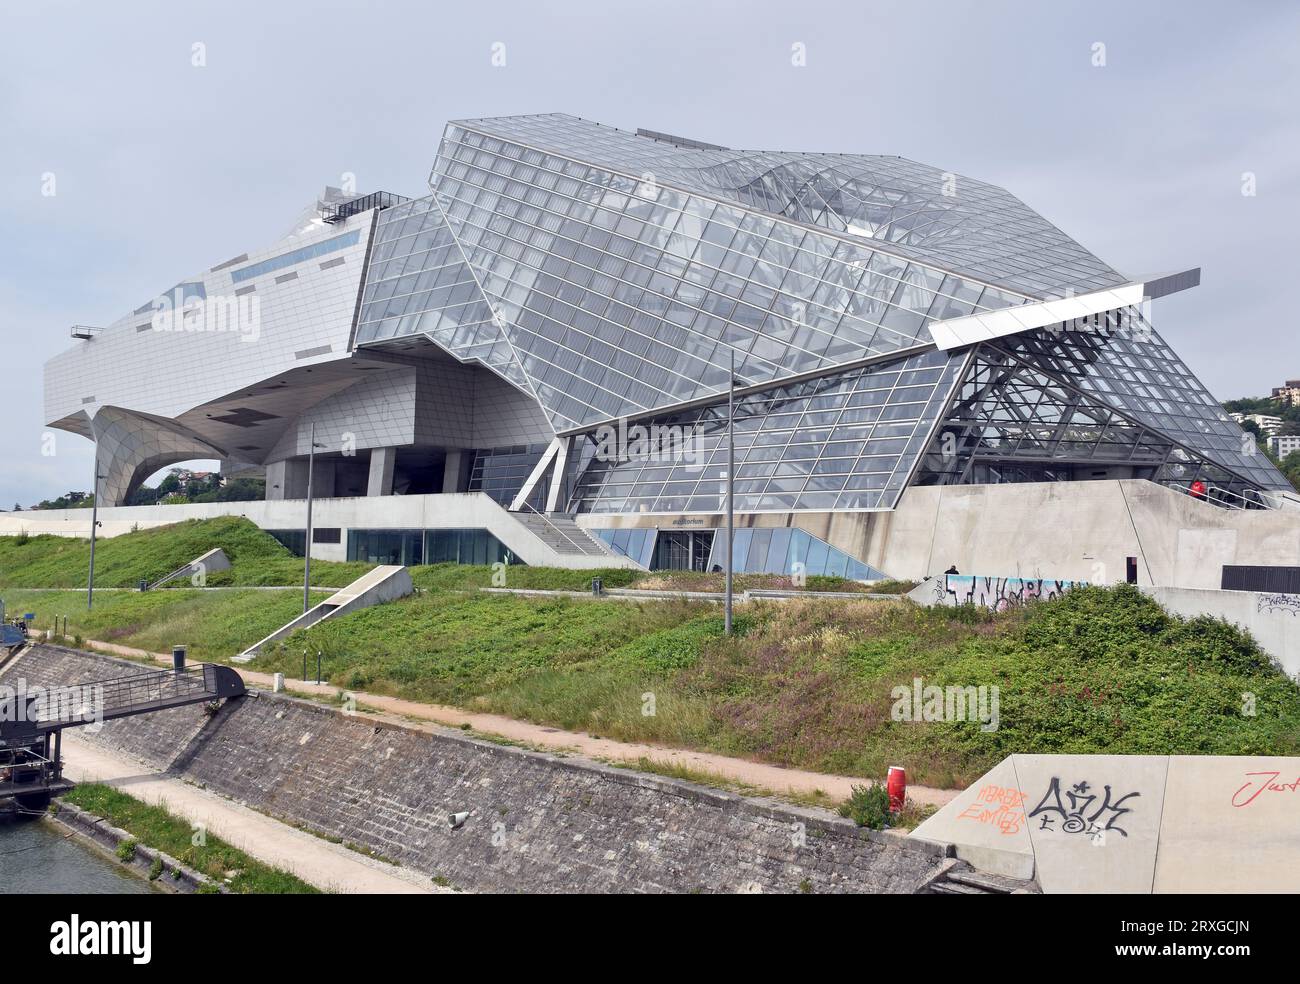 Musée des Confluences, Lyon, France, Deconstructivist style museum clad in glass & reflective metal, architects Coop Himmelb(l)au, under overcast sky Stock Photo